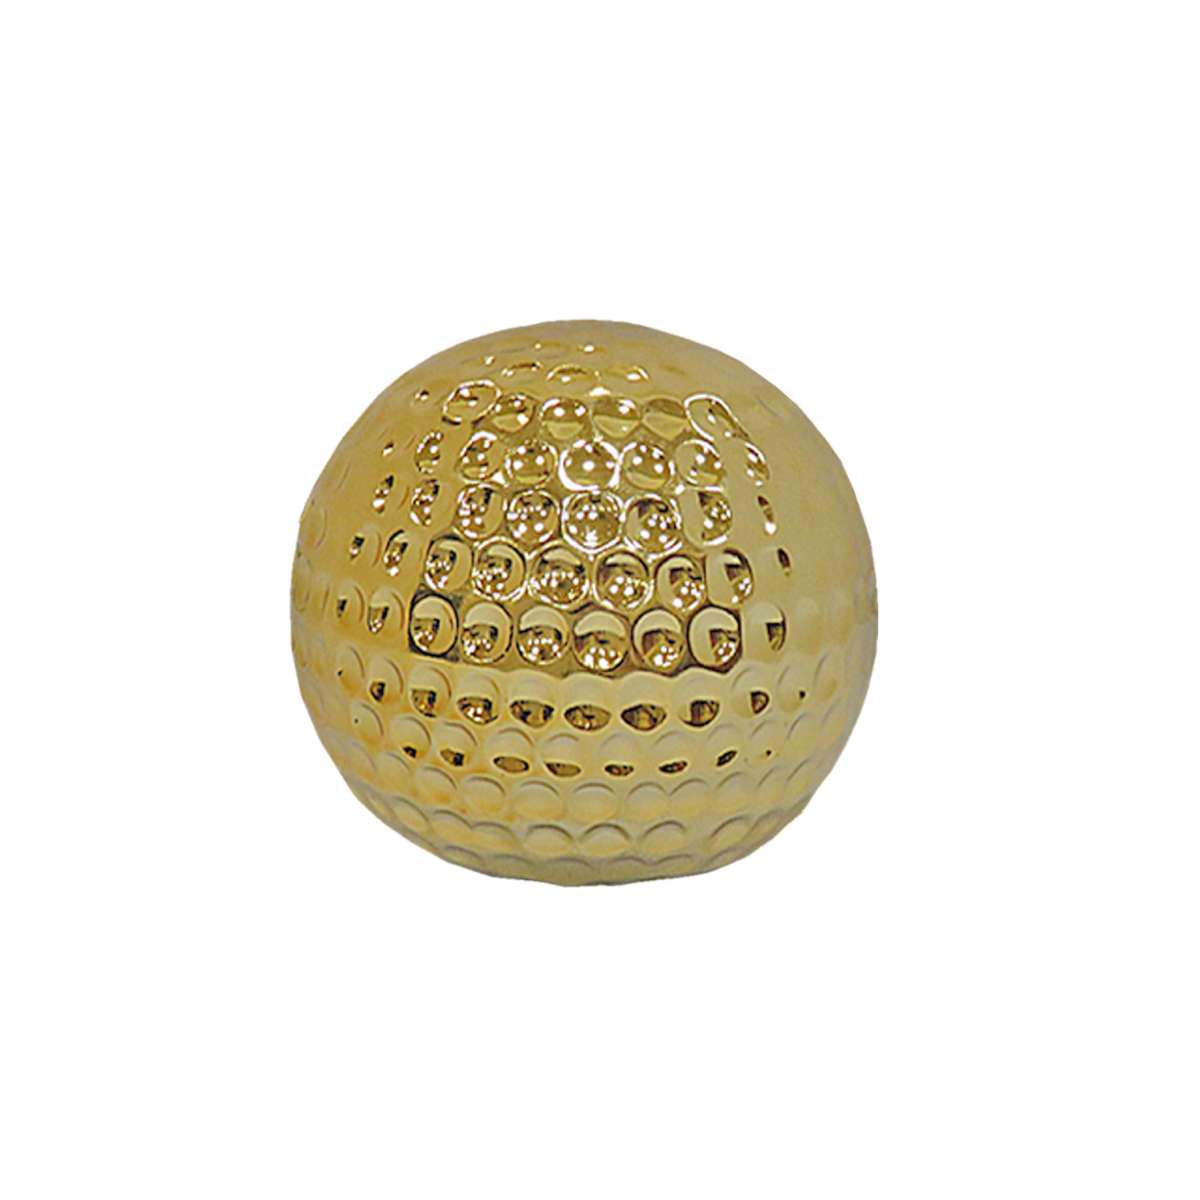 Διακοσμητική Μπάλα Κεραμική Χρυσή Art Et Lumiere 10εκ. 02806 (Υλικό: Κεραμικό, Χρώμα: Χρυσό ) - Art Et Lumiere - lumiere_02806 137794